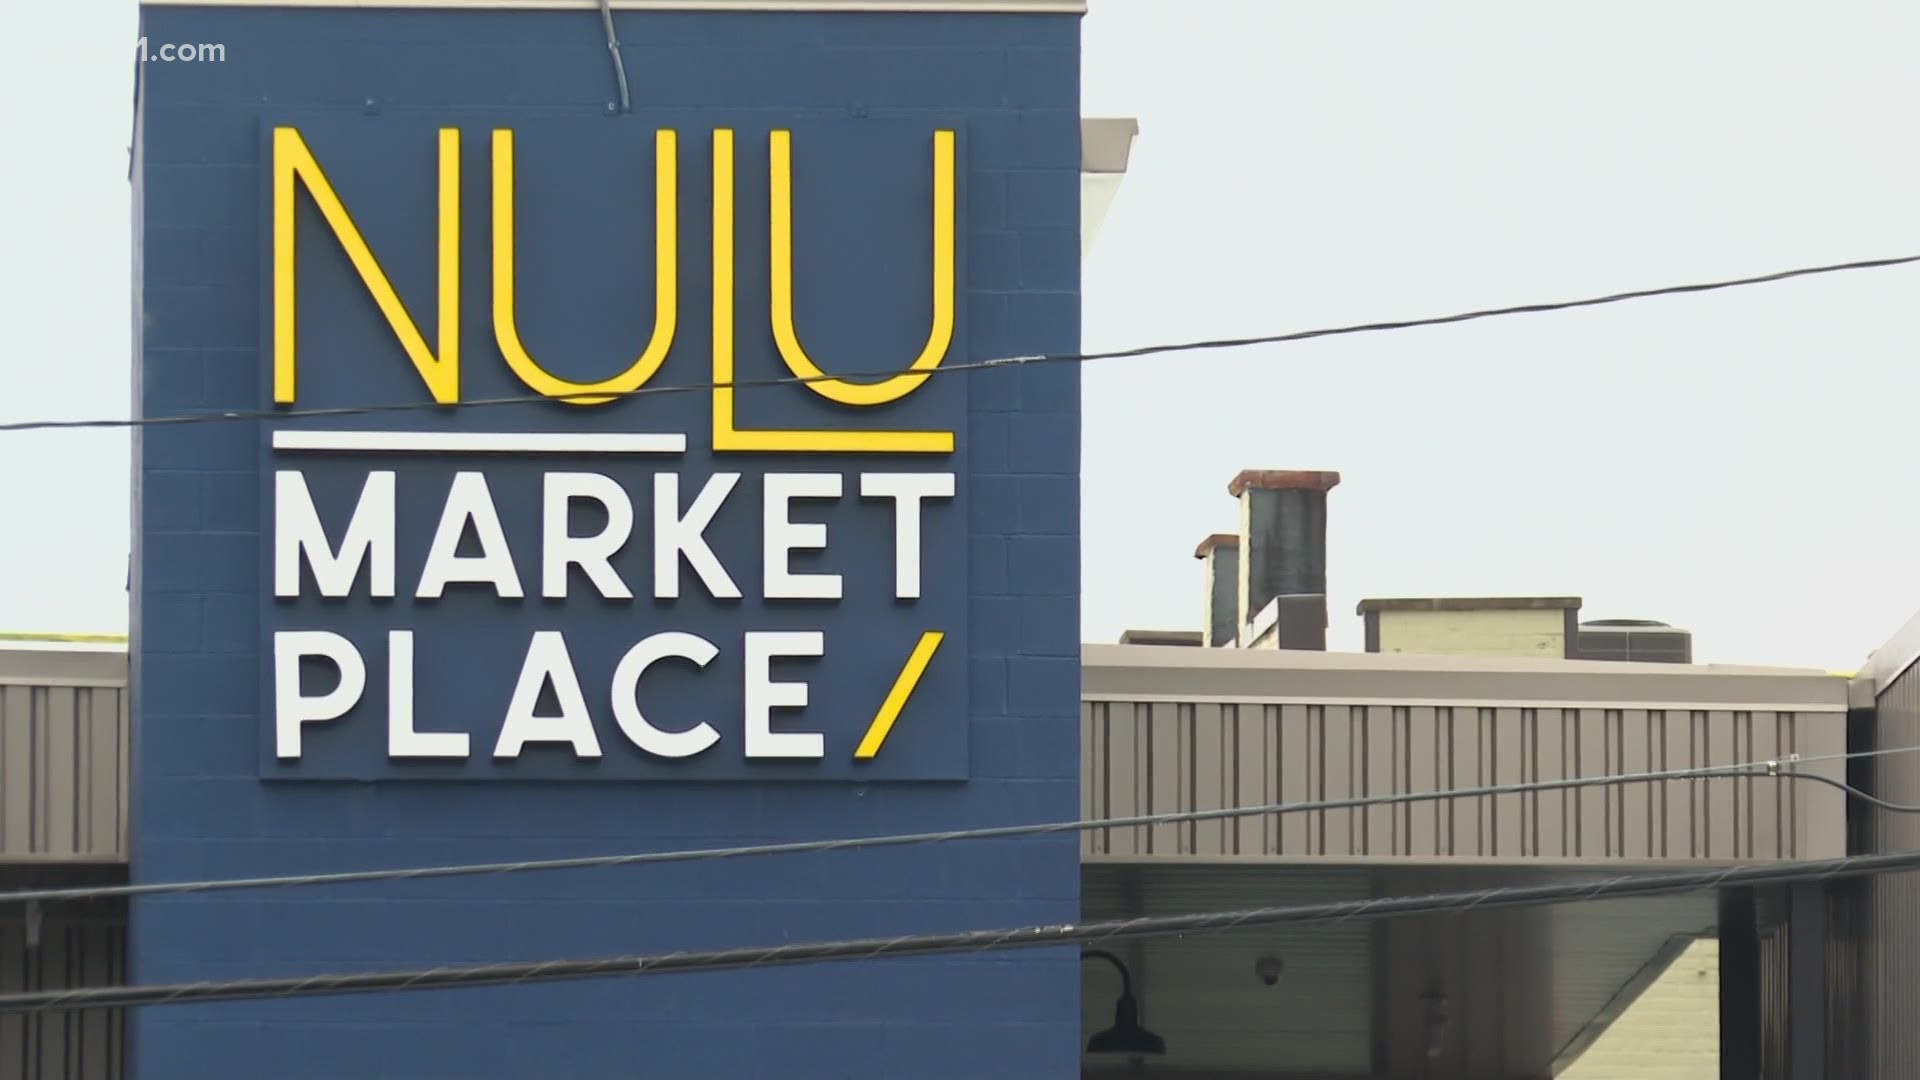 Lou Lou on Market ready to open its doors in Louisville's Nulu neighborhood, Business